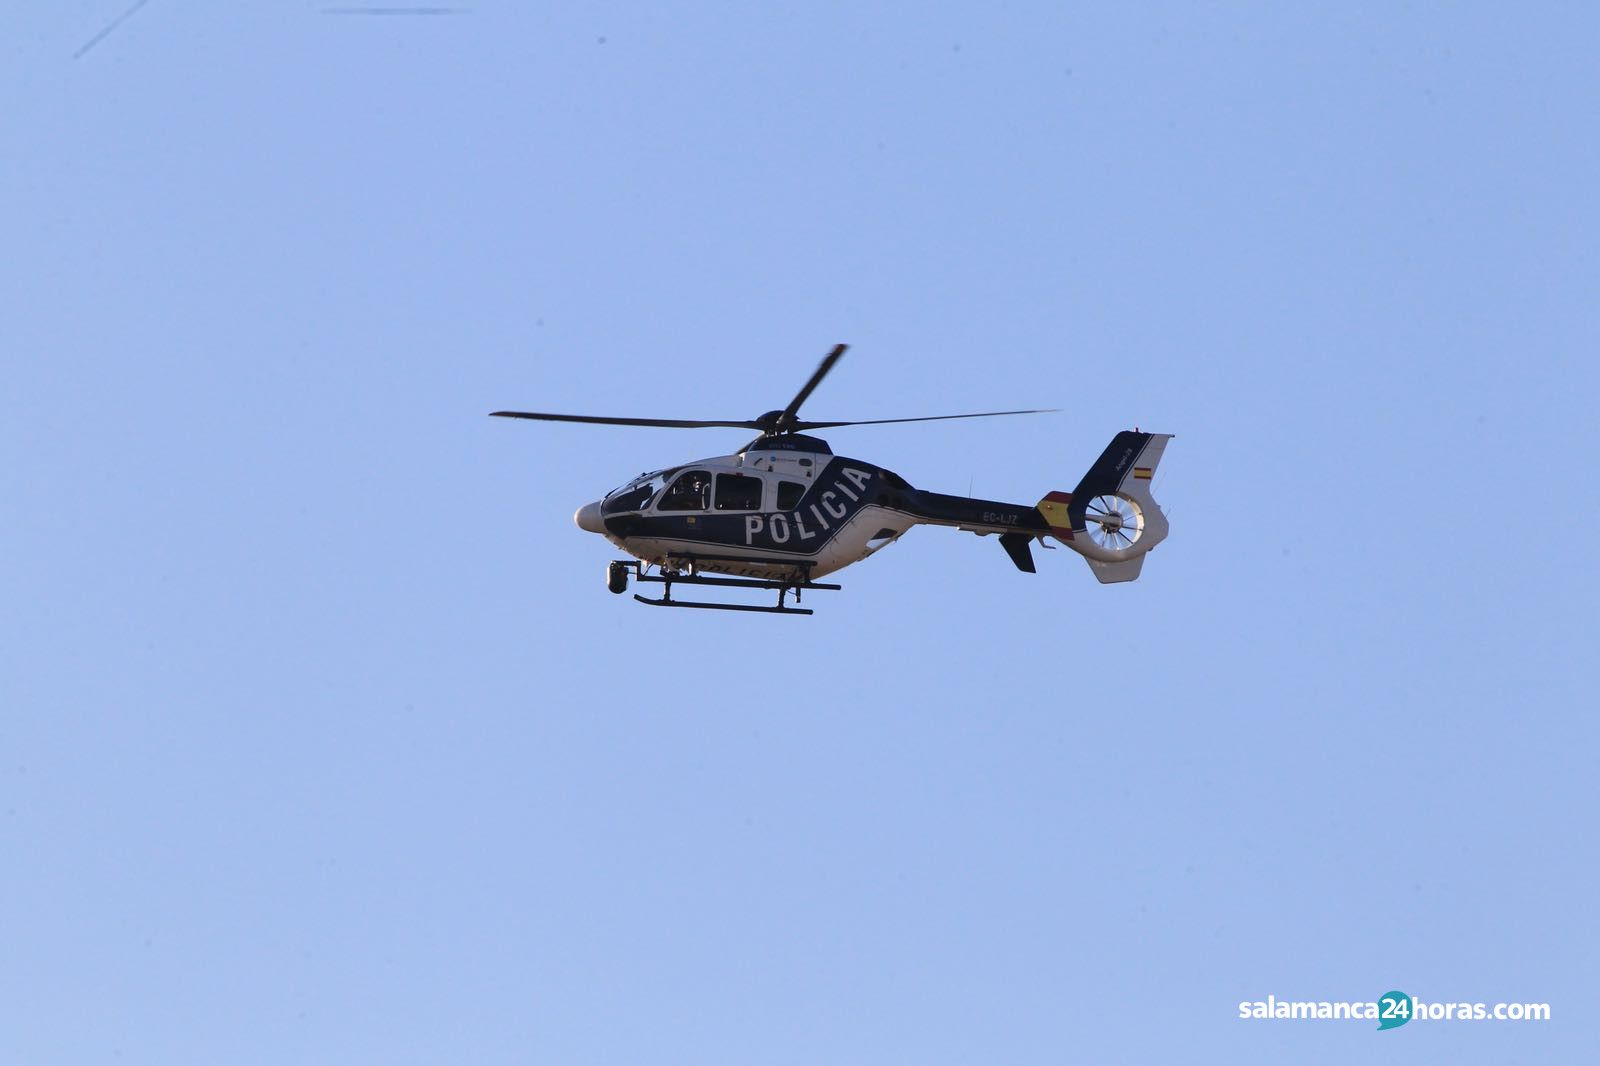  Búsqueda del joven desaparecido por helicóptero (12) 